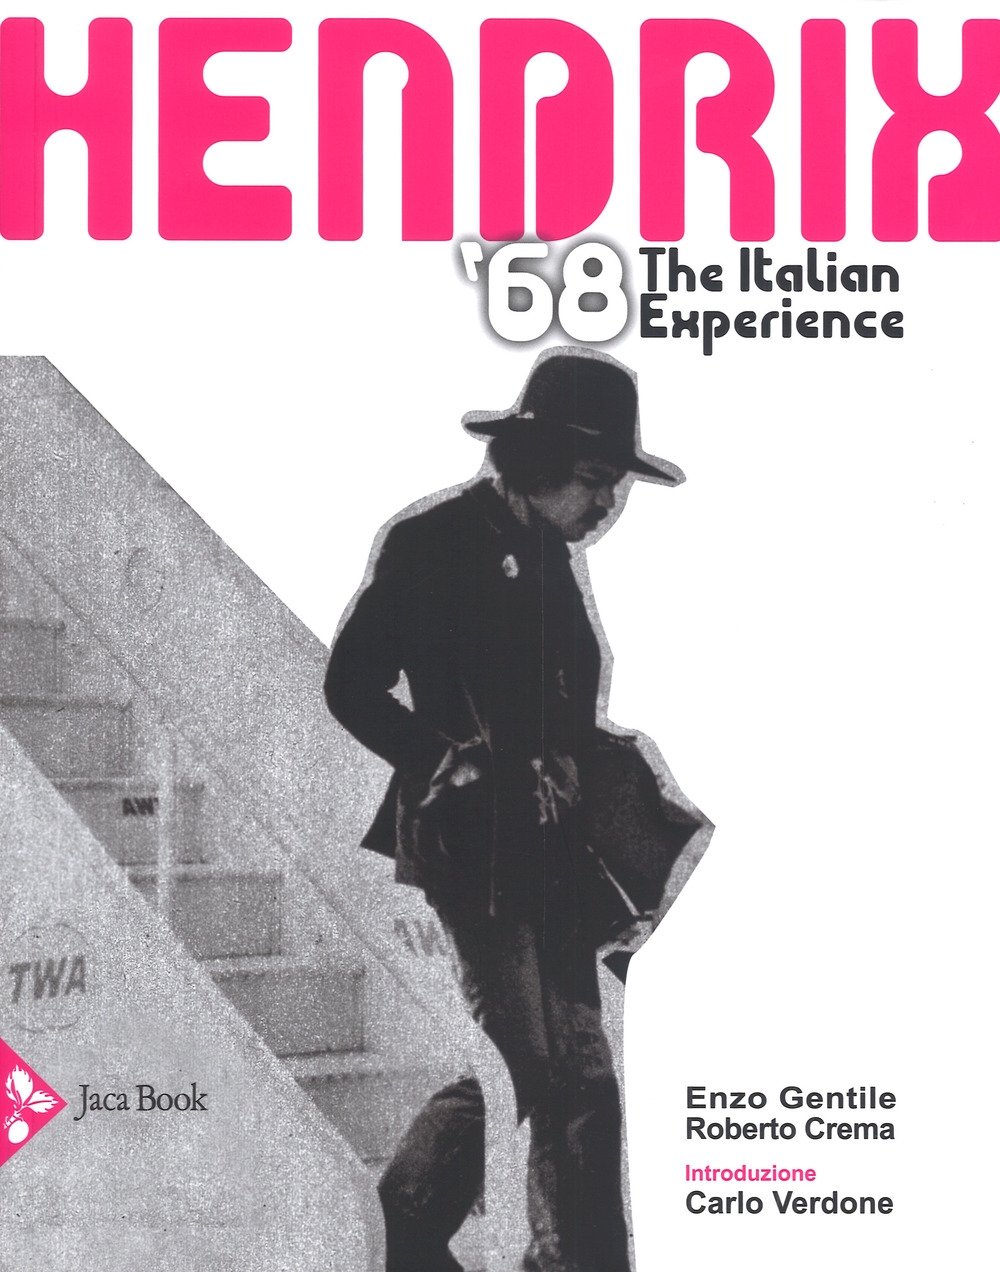 Libri Enzo Gentile / Roberto Crema - Hendrix 1968. The Italian Experience NUOVO SIGILLATO, EDIZIONE DEL 26/04/2018 SUBITO DISPONIBILE